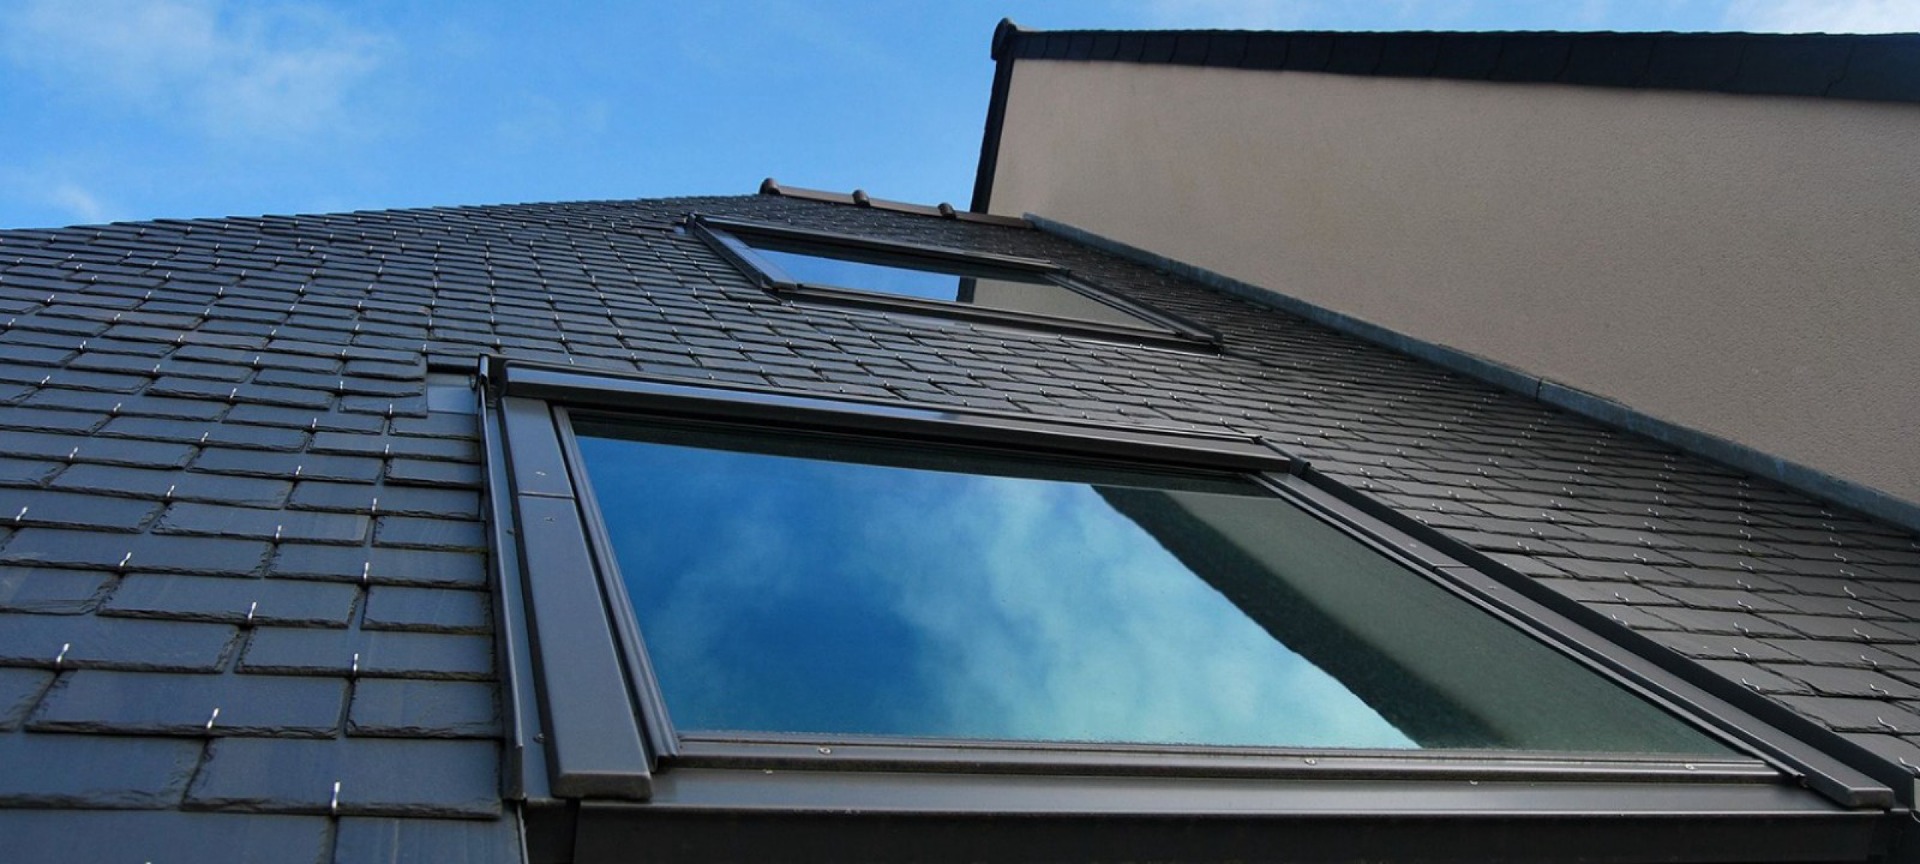 Detailansicht von zwei Dachfenstern auf einem schwarz gedecktem Dach.